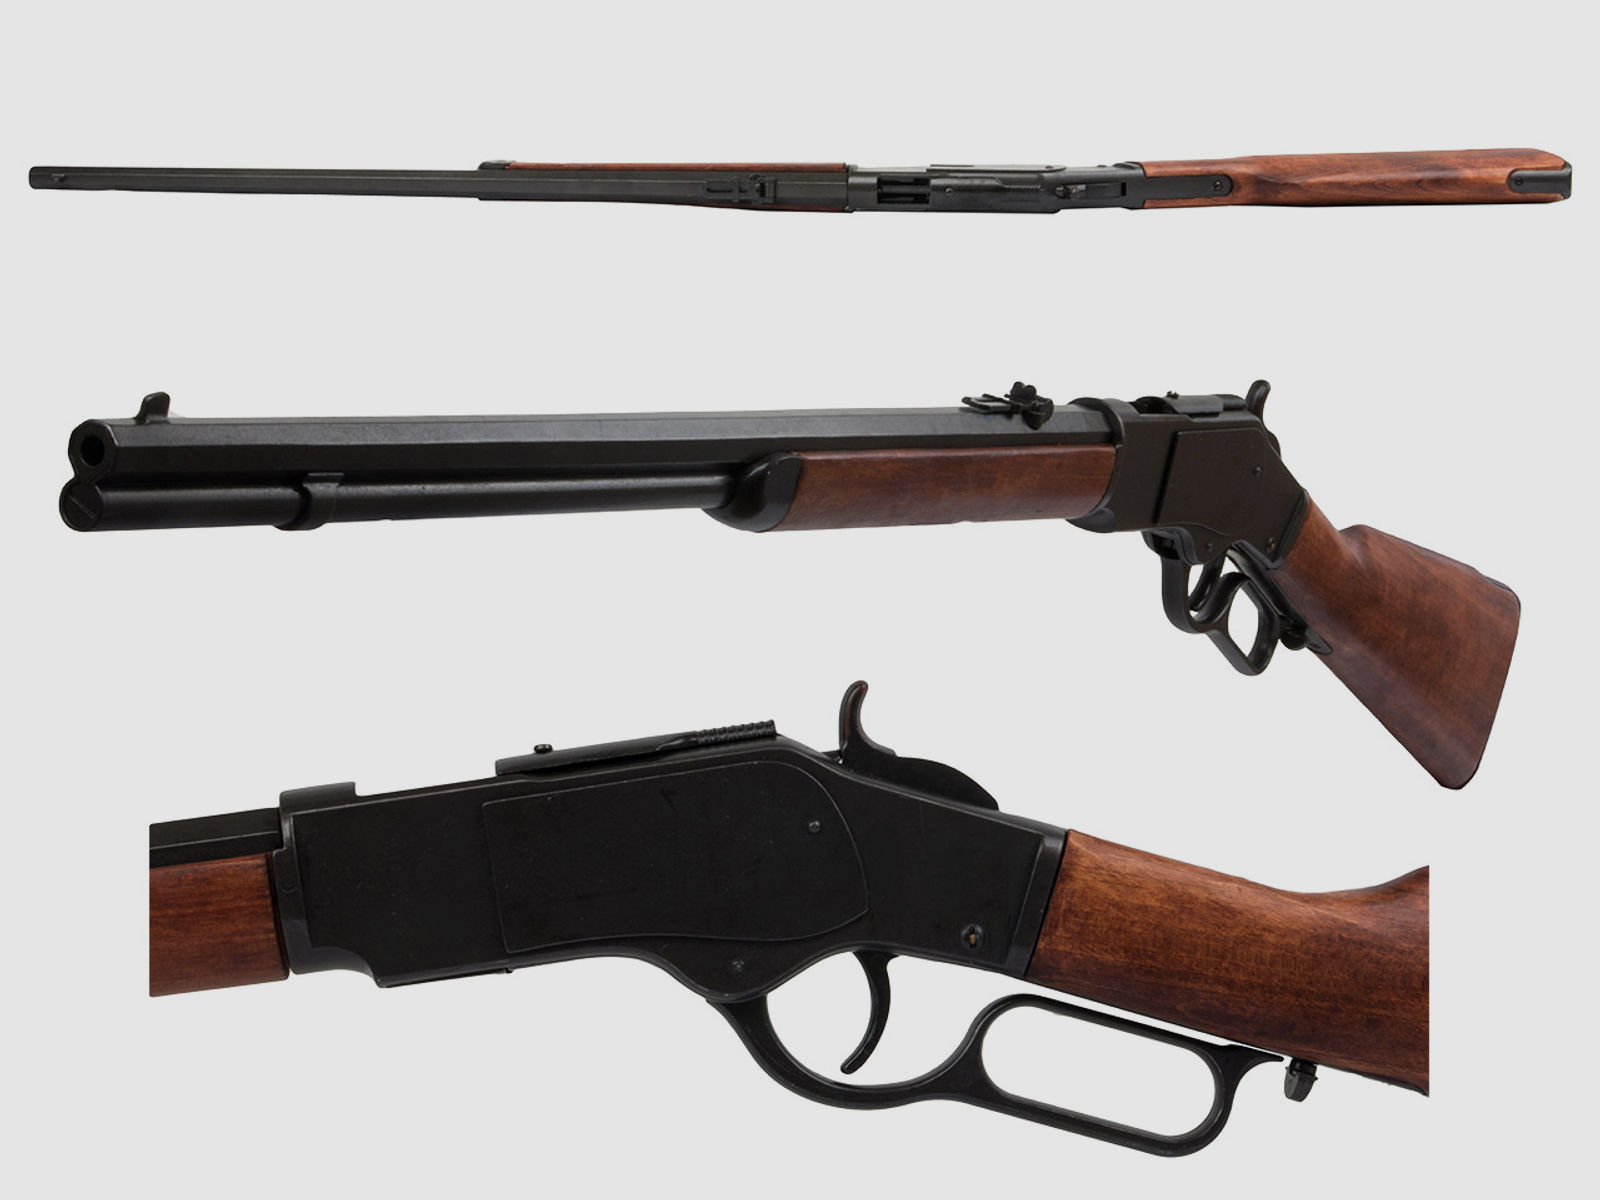 Deko Westerngewehr Denix Winchester Mod. 73 USA 1873 schwarz realistisches Repetieren mit HĂĽlsenauswurf GesamtlĂ¤nge 110 cm